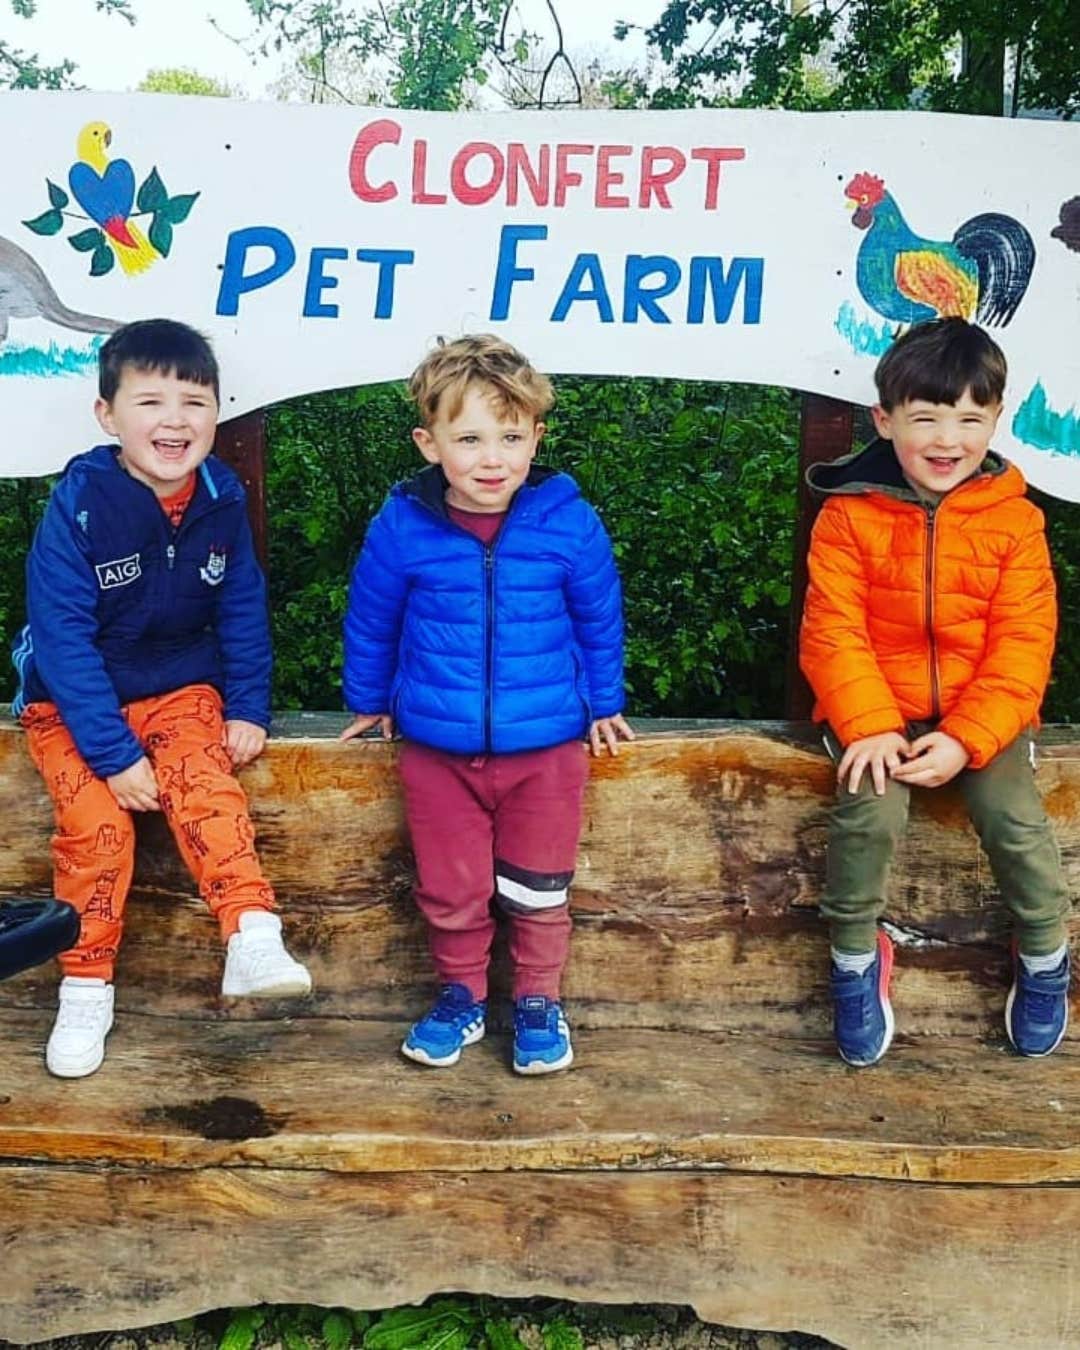 Clonfert Pet Farm